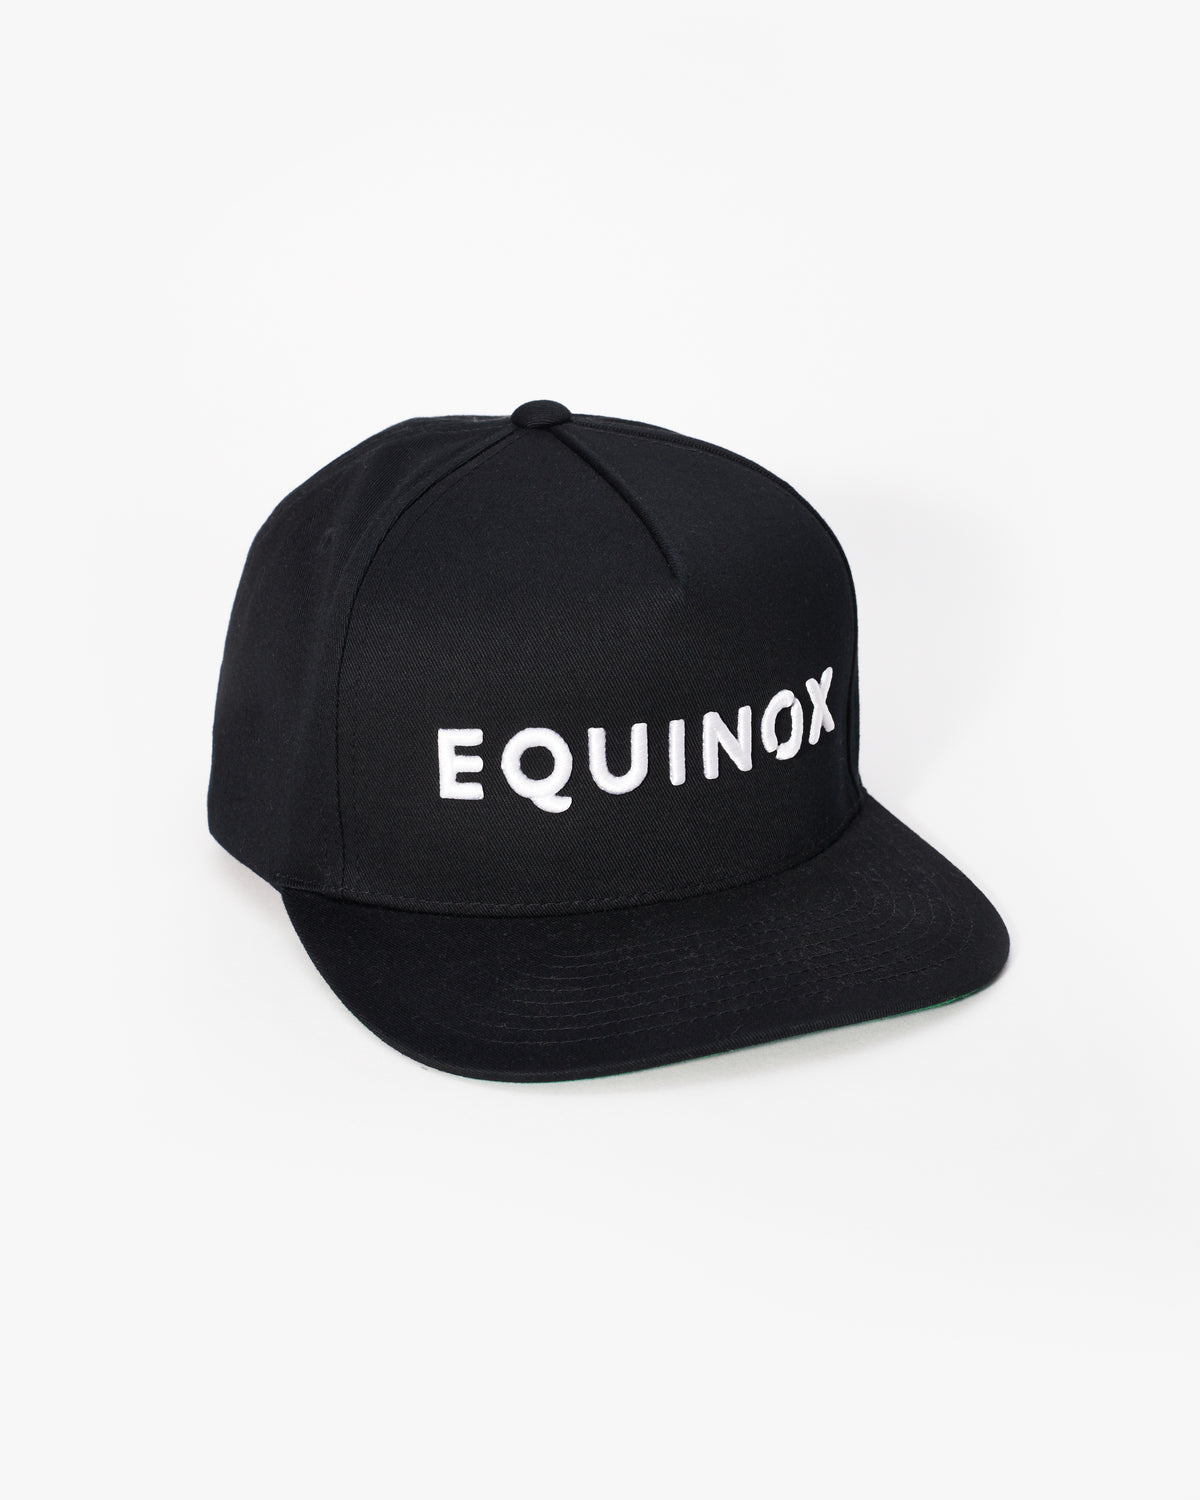 Equinox Shop Equinox Snapback The at – Brim Flat Hat